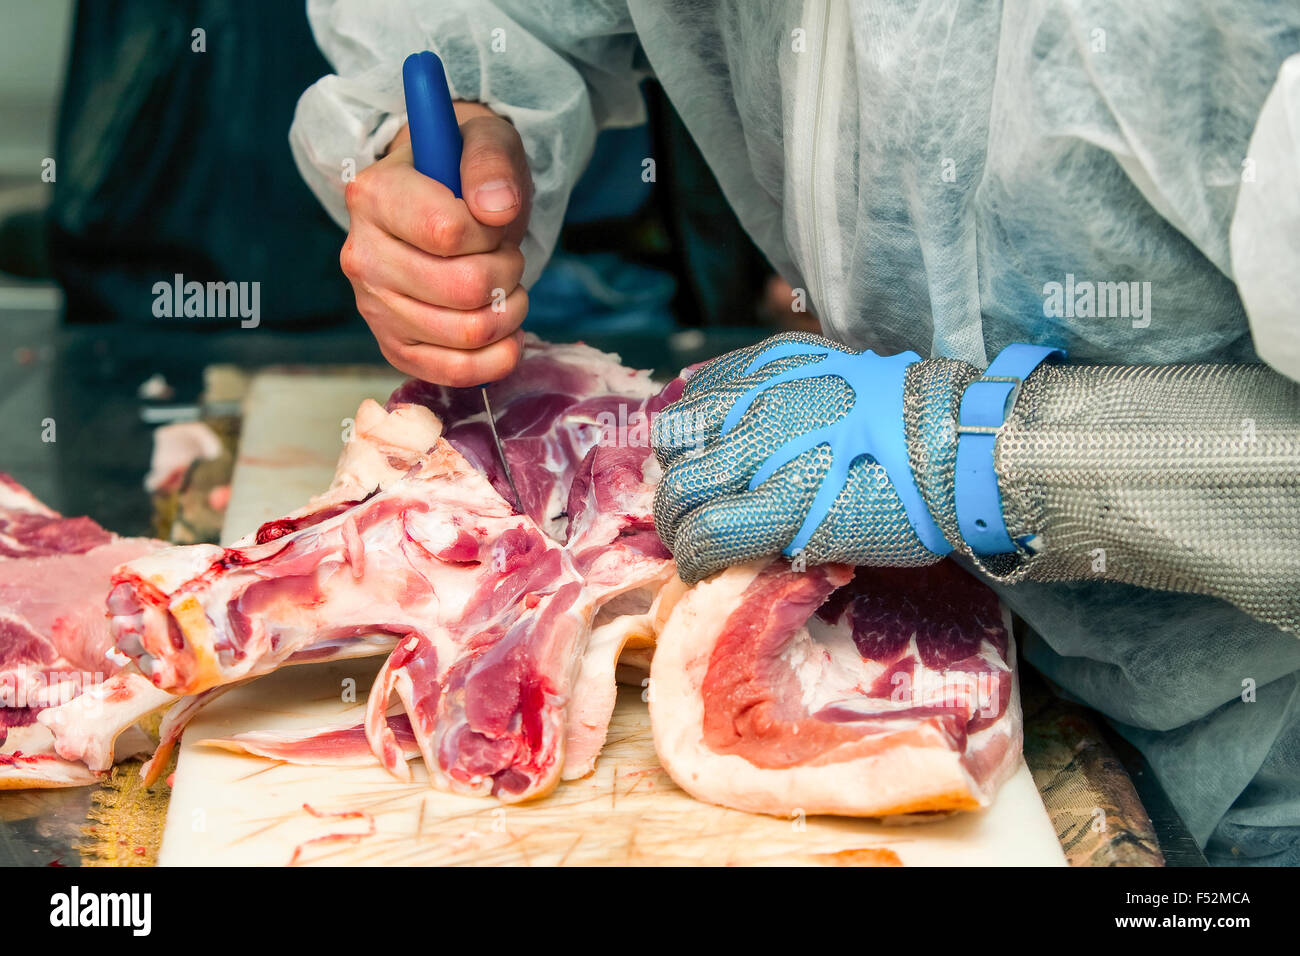 Butcher que couper la viande de porc fraîche en portant des gants protecteurs Banque D'Images